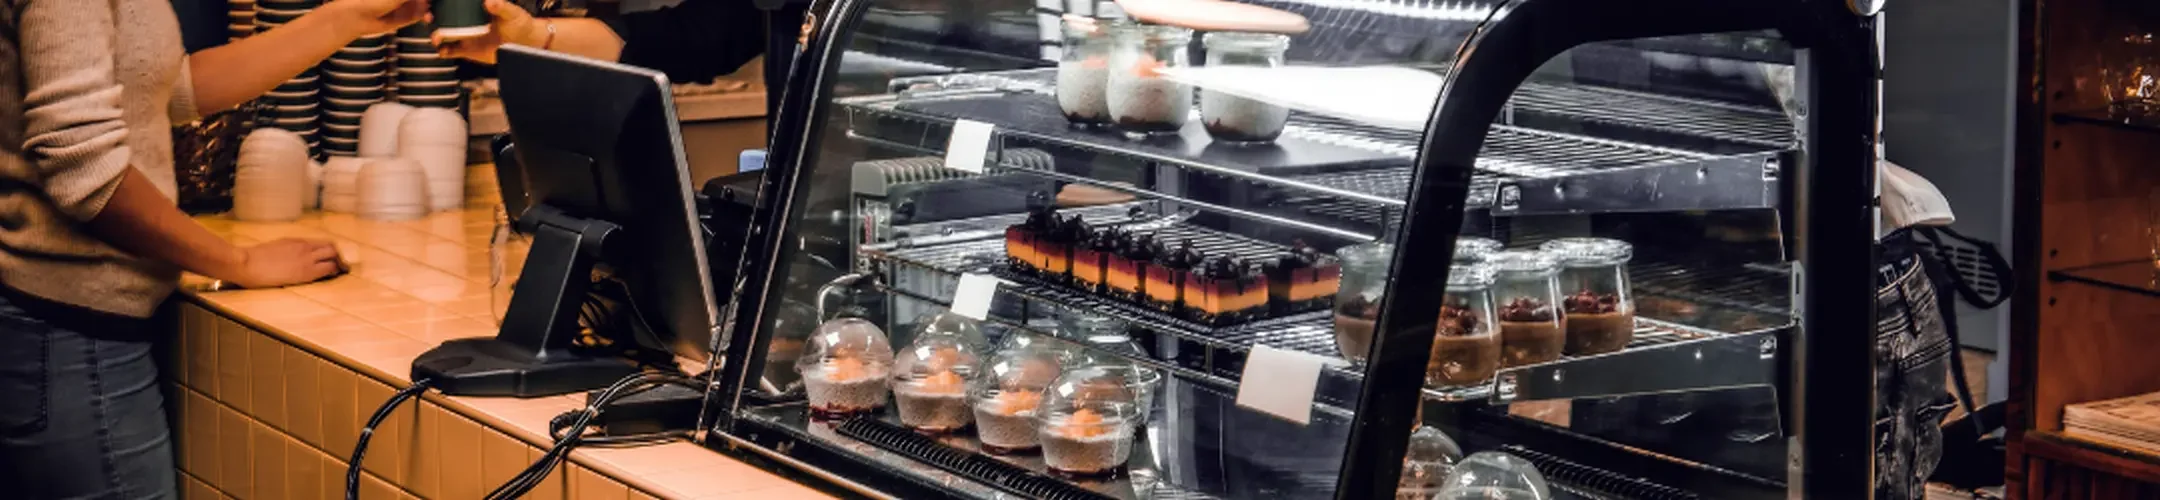 Kühlvitrine mit Puddings und Joghurts in einem Cafe